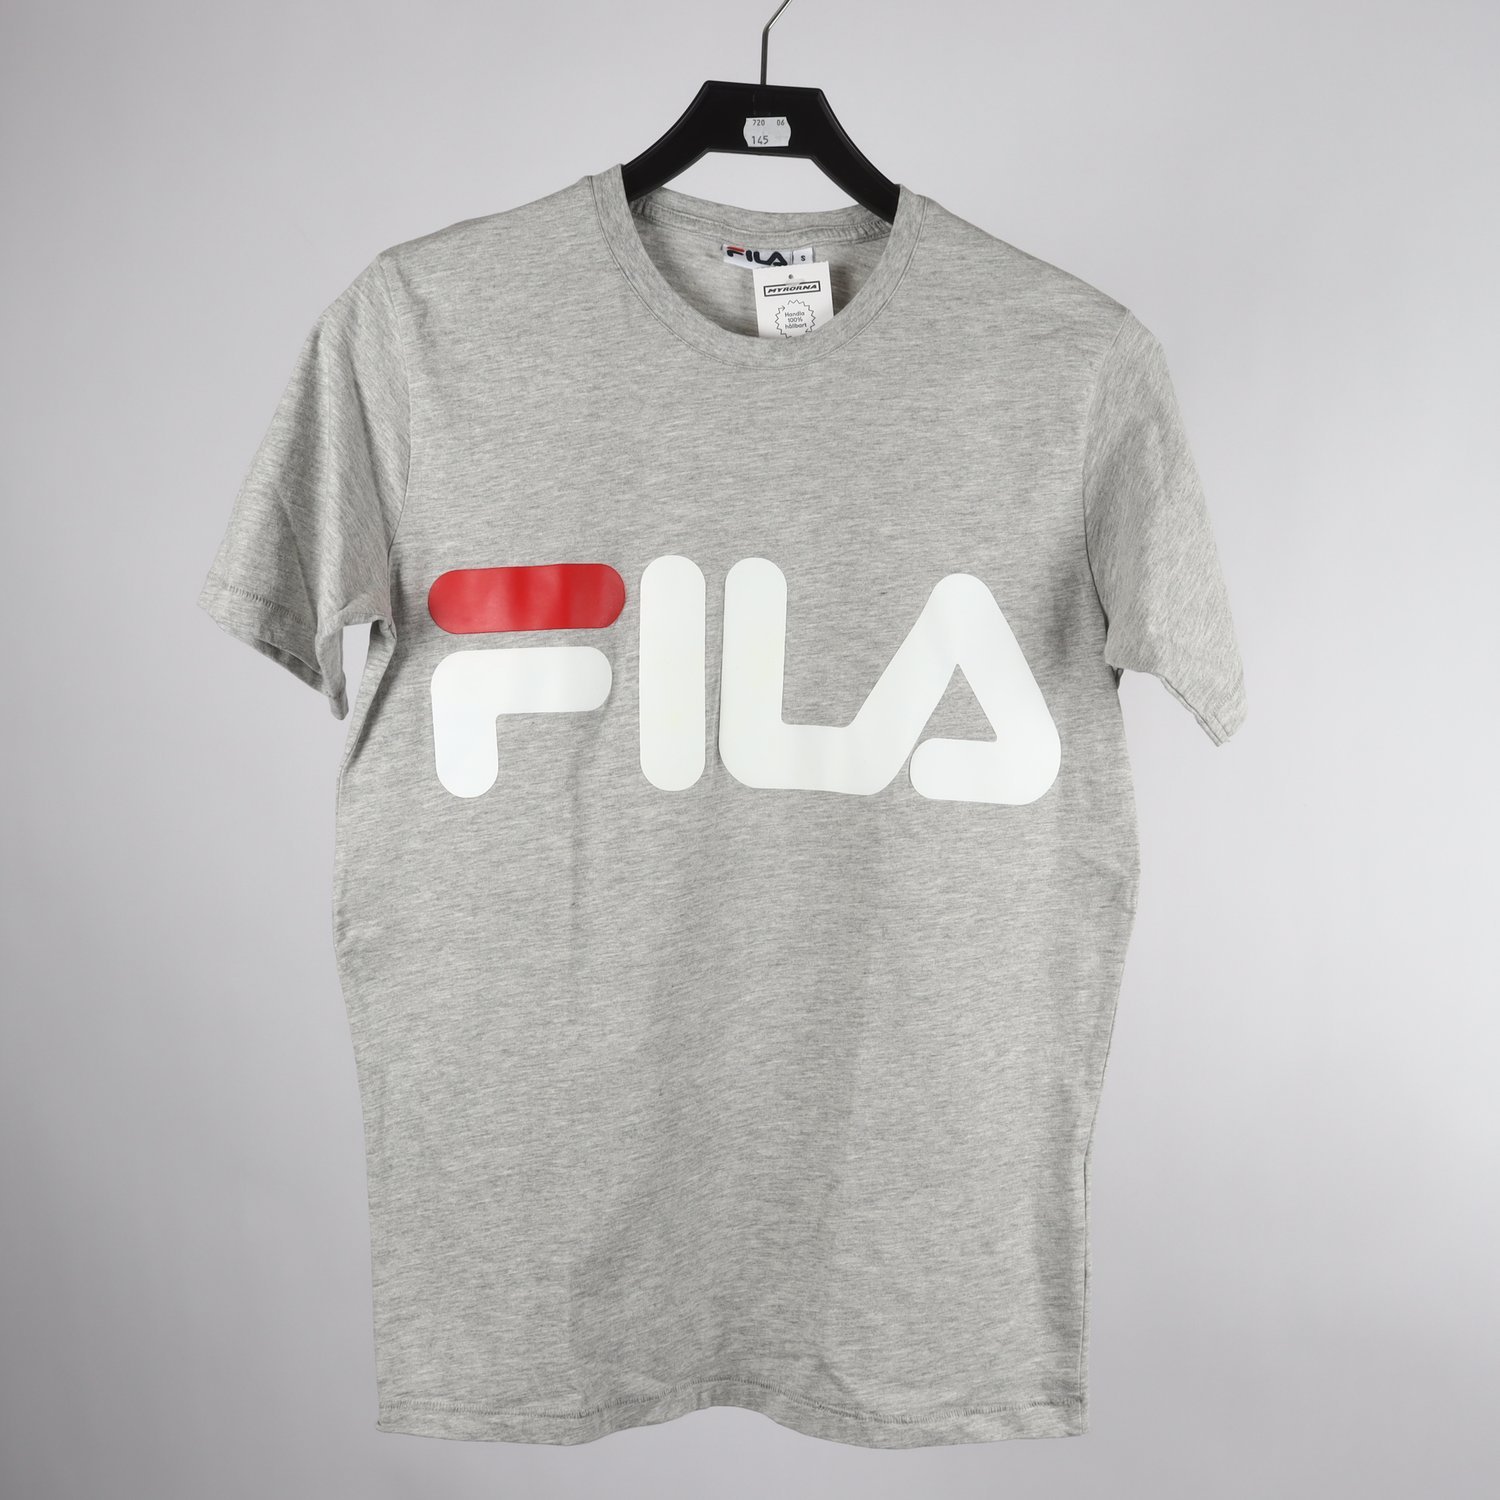 T-shirt, Fila, grå, stl. S